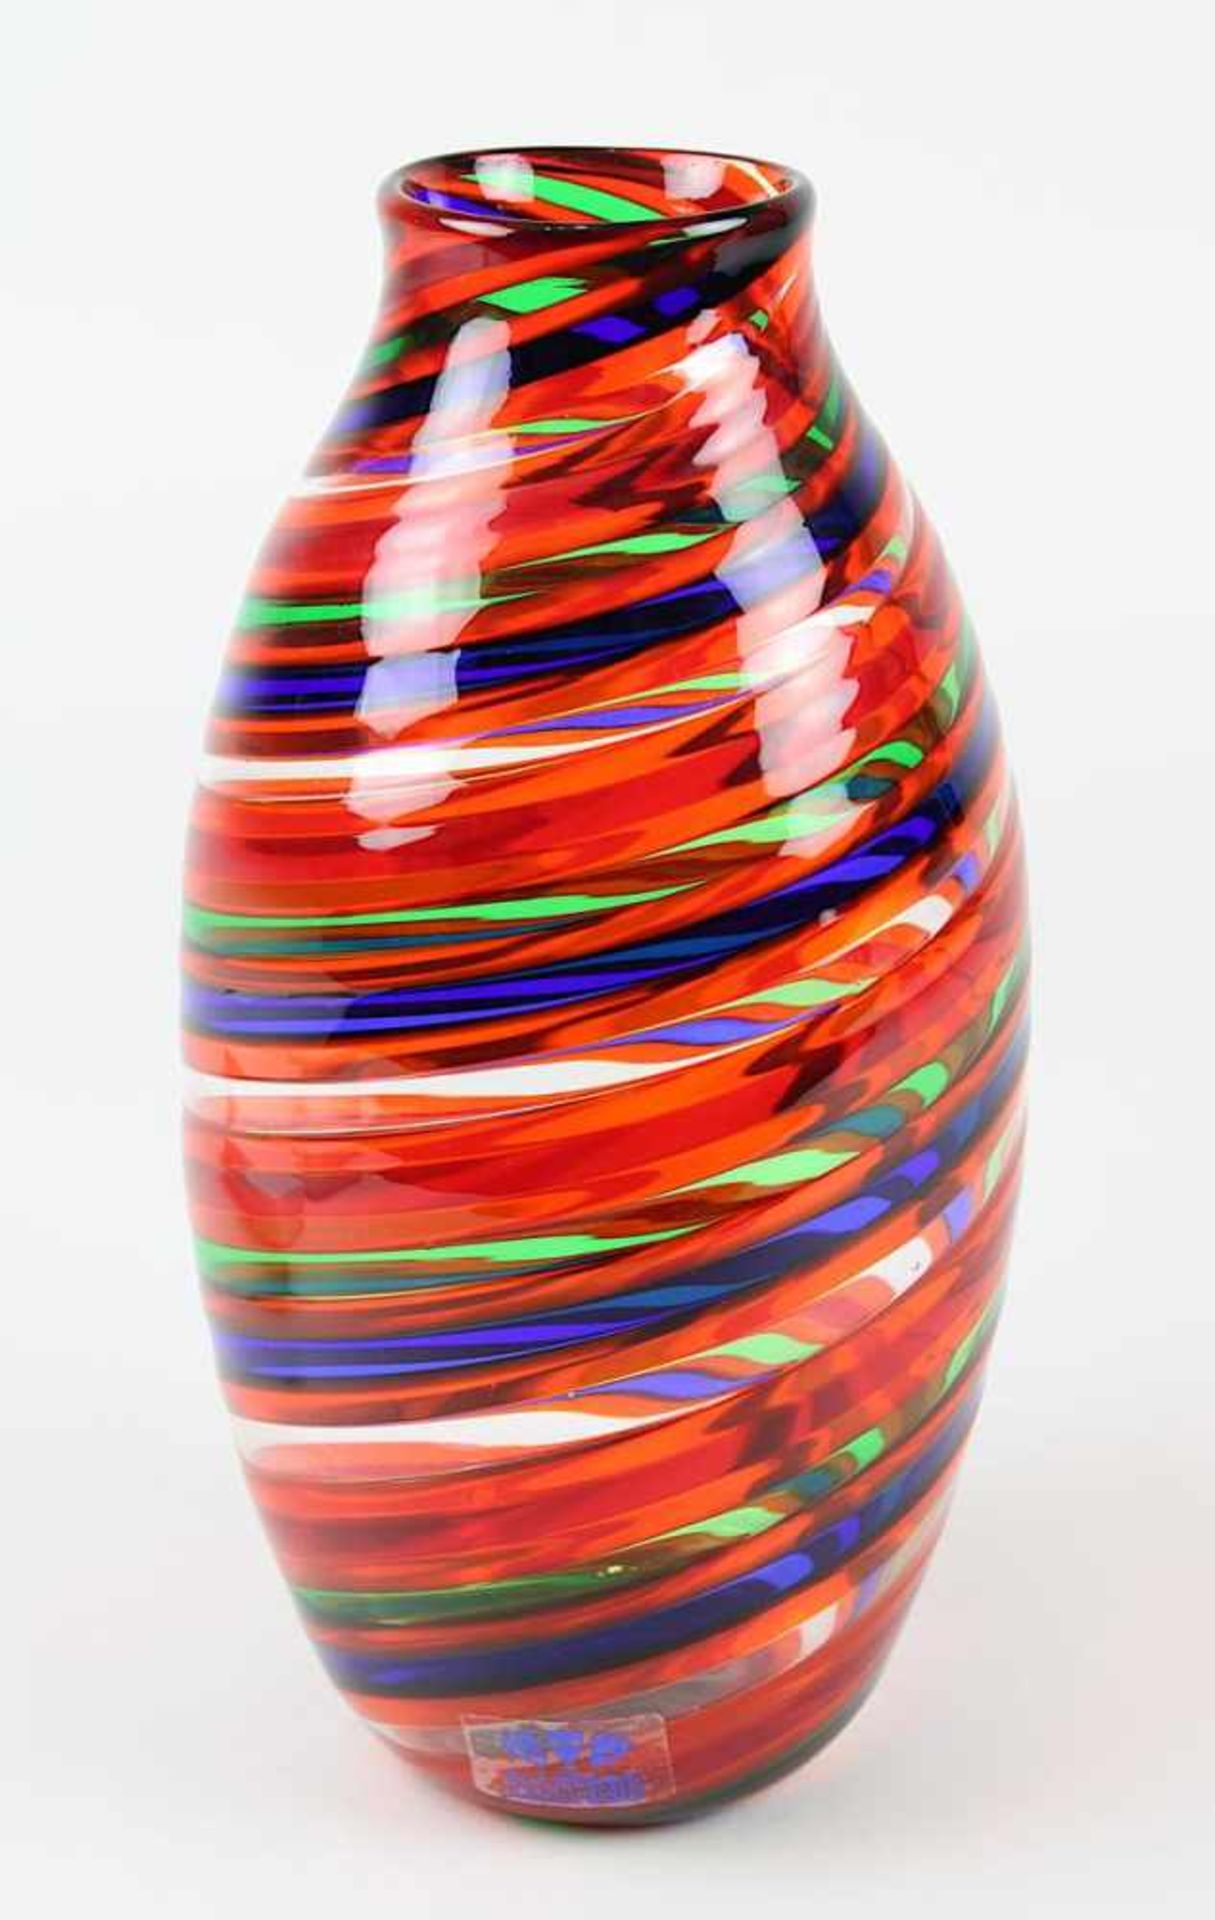 Elli Toso - Glasfadenvase, Murano, langgezogener Glaskörper mit spiralförmig aneinandergesetzten,